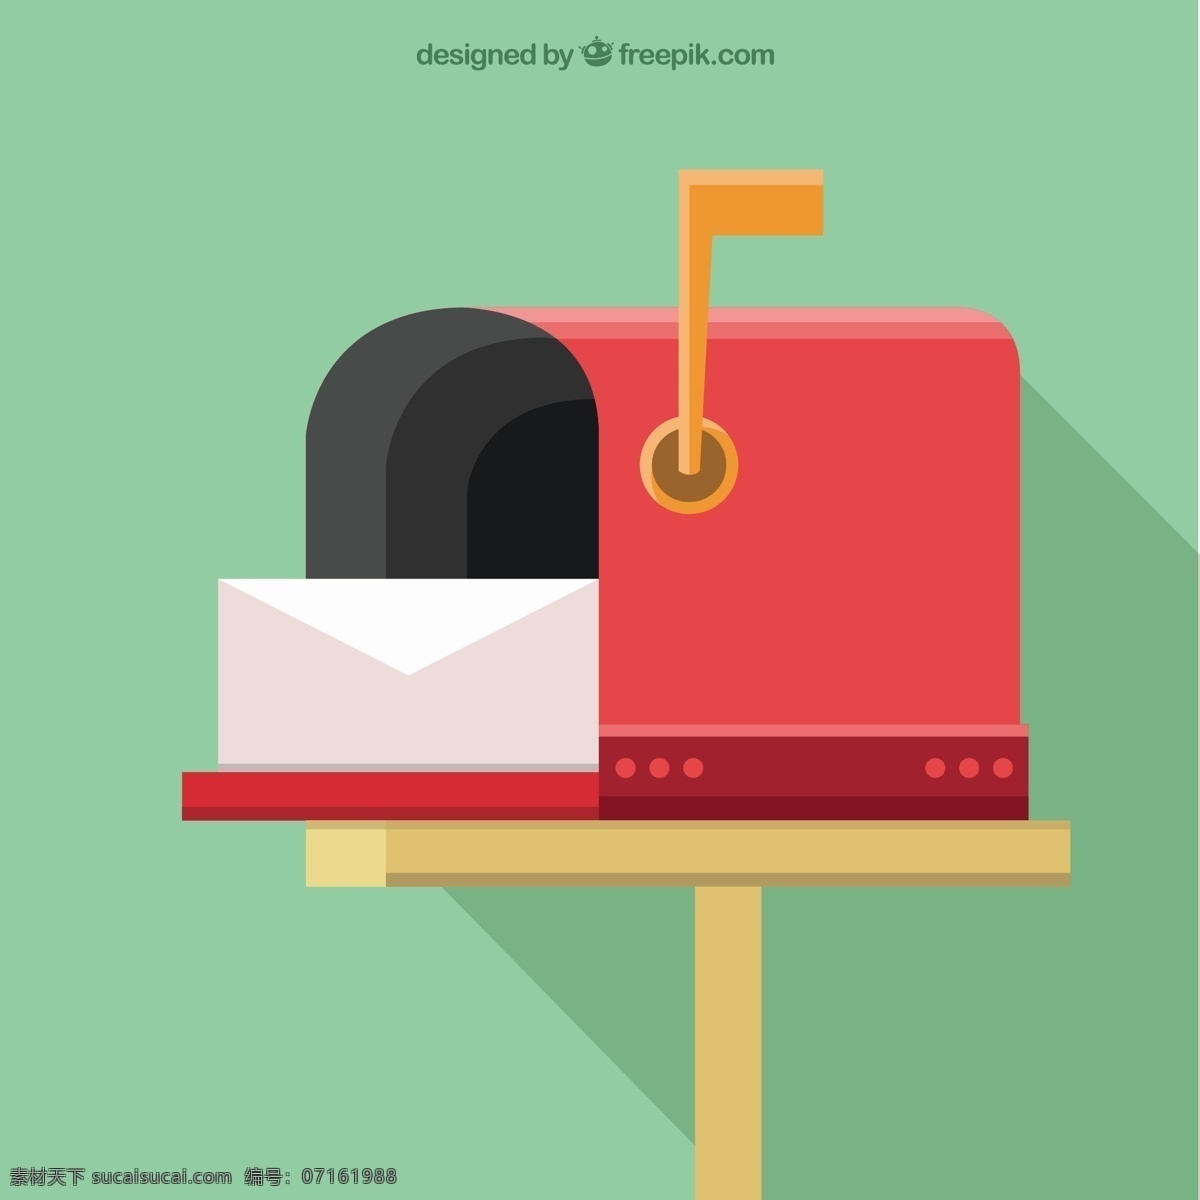 红色 邮箱 背景 信封 平面设计 盒 红 交付 平 电子邮件 通讯 岗位 邮政 发送 邮寄 邮递 邮筒 信箱 信函